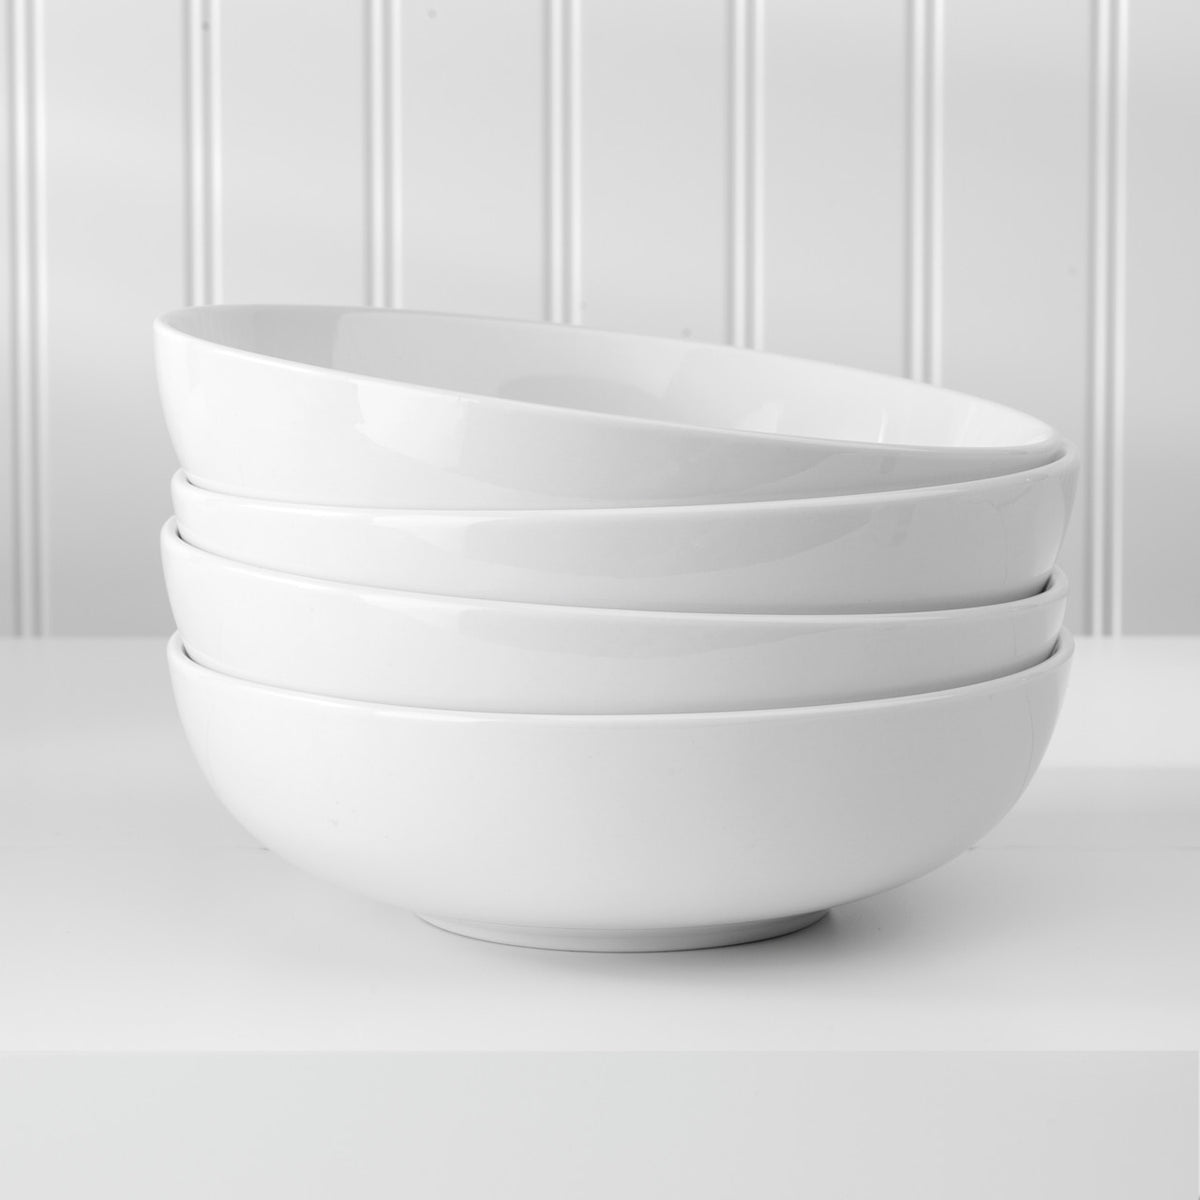  GlowSol 42 OZ Soup Bowls Set of 4, White Ceramic Bowls